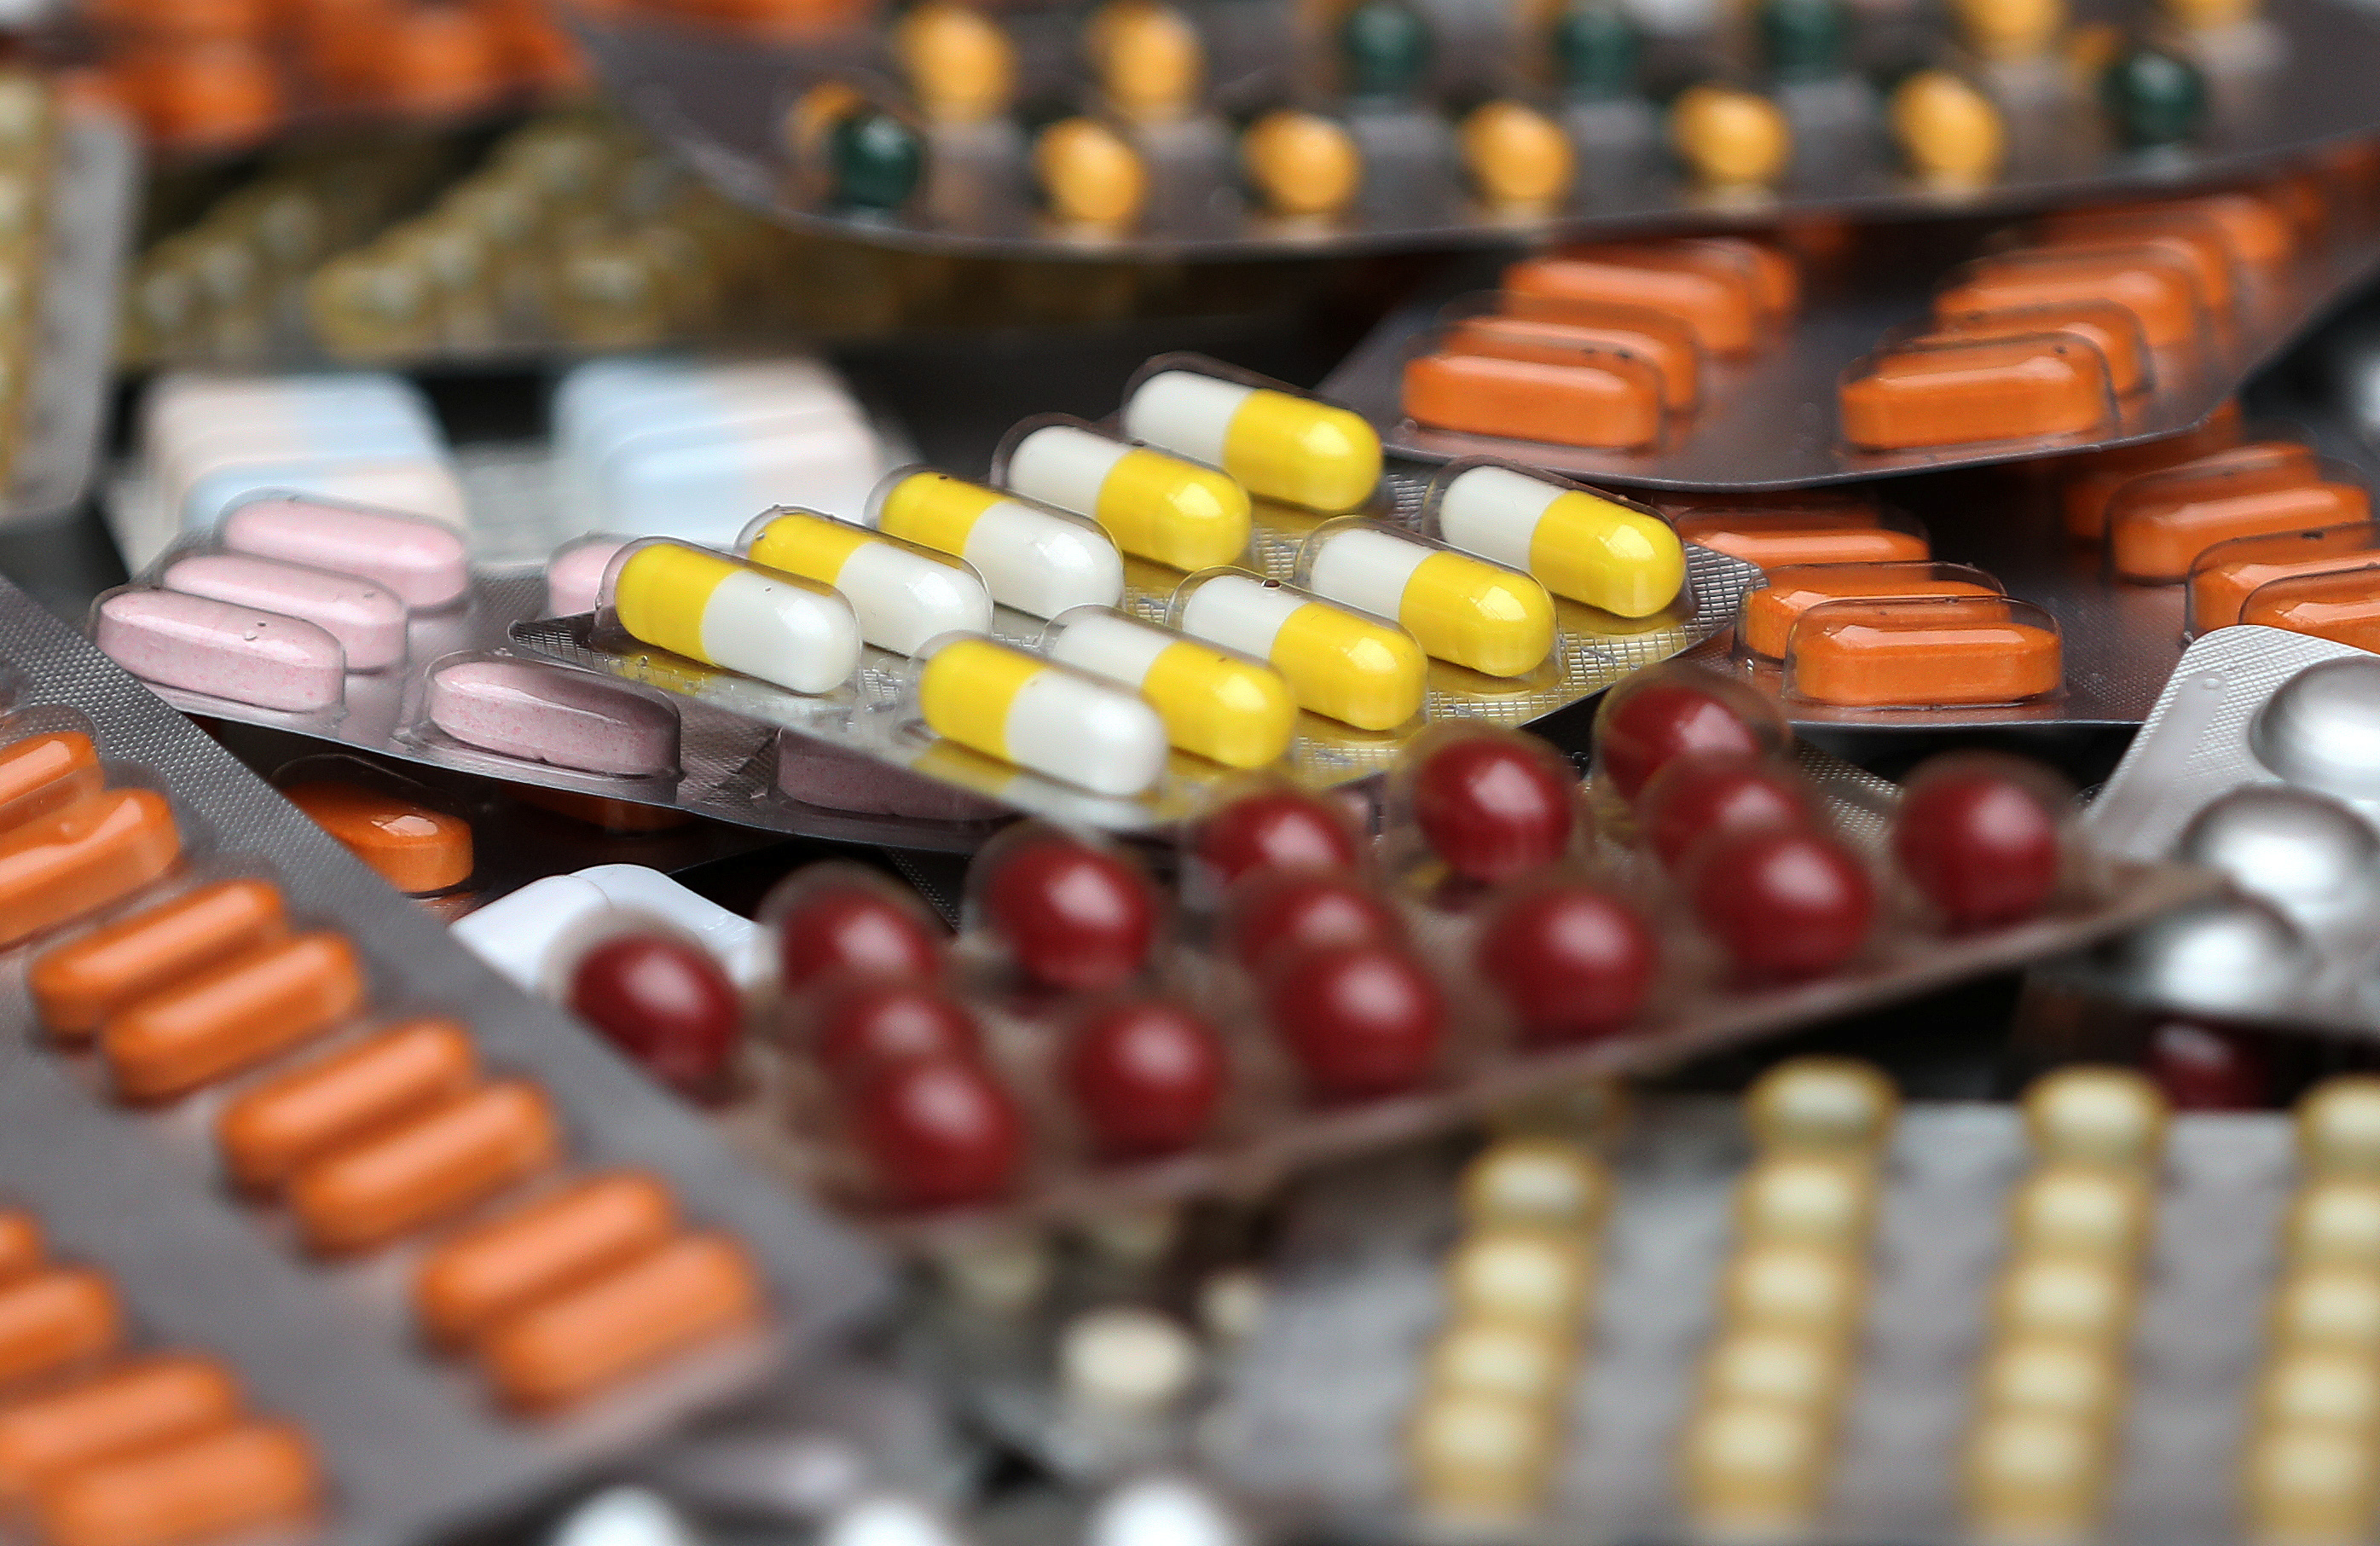 Φάρμακα: Ο ΕΟΦ ξεκινά σήμερα αυστηρούς ελέγχους στις φαρμακαποθήκες – Ανησυχία για την έξαρση των ιώσεων